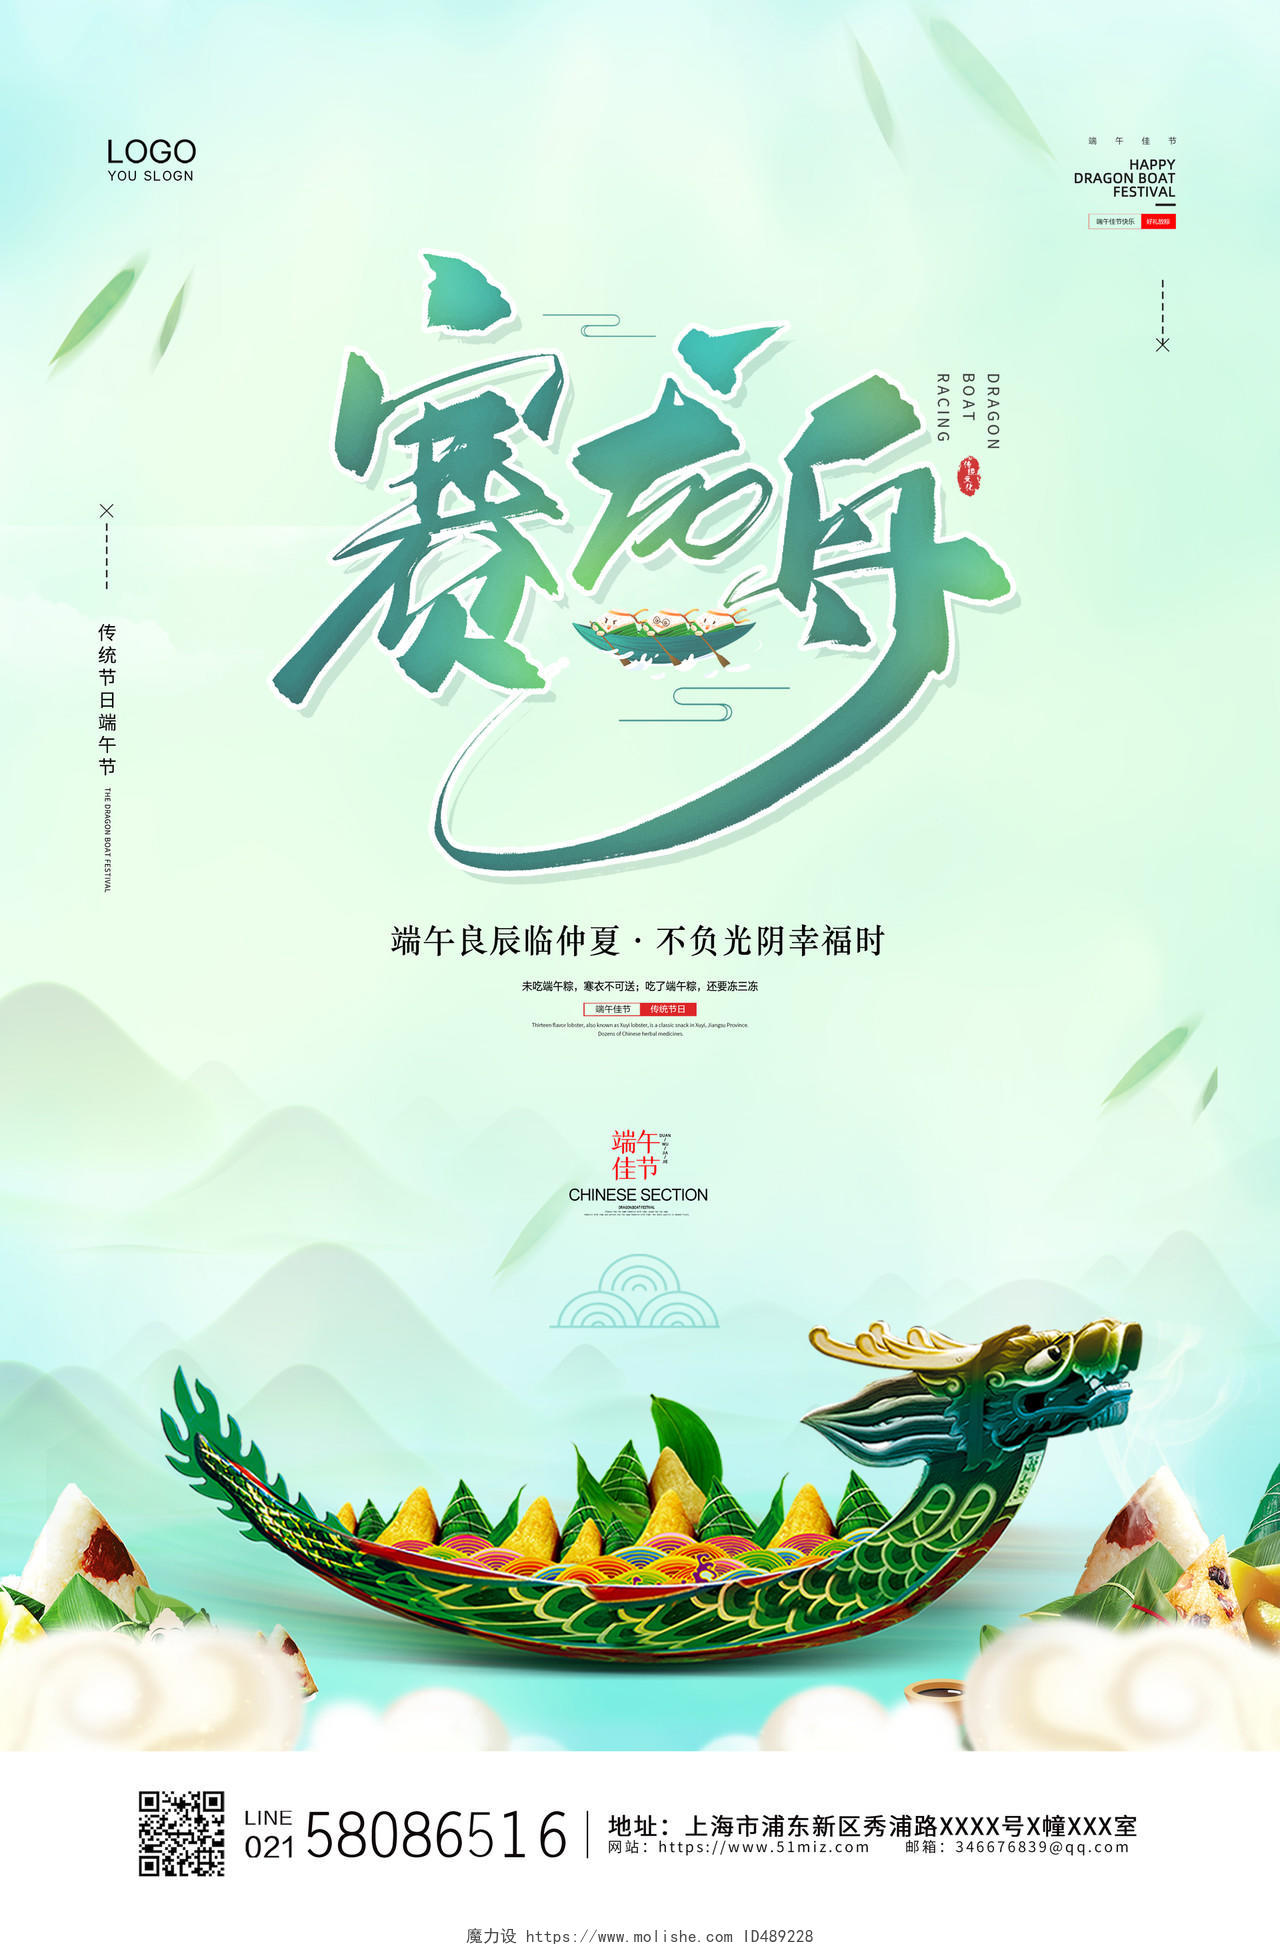 绿色大气龙舟传统节日端午节赛龙舟节日活动宣传海报